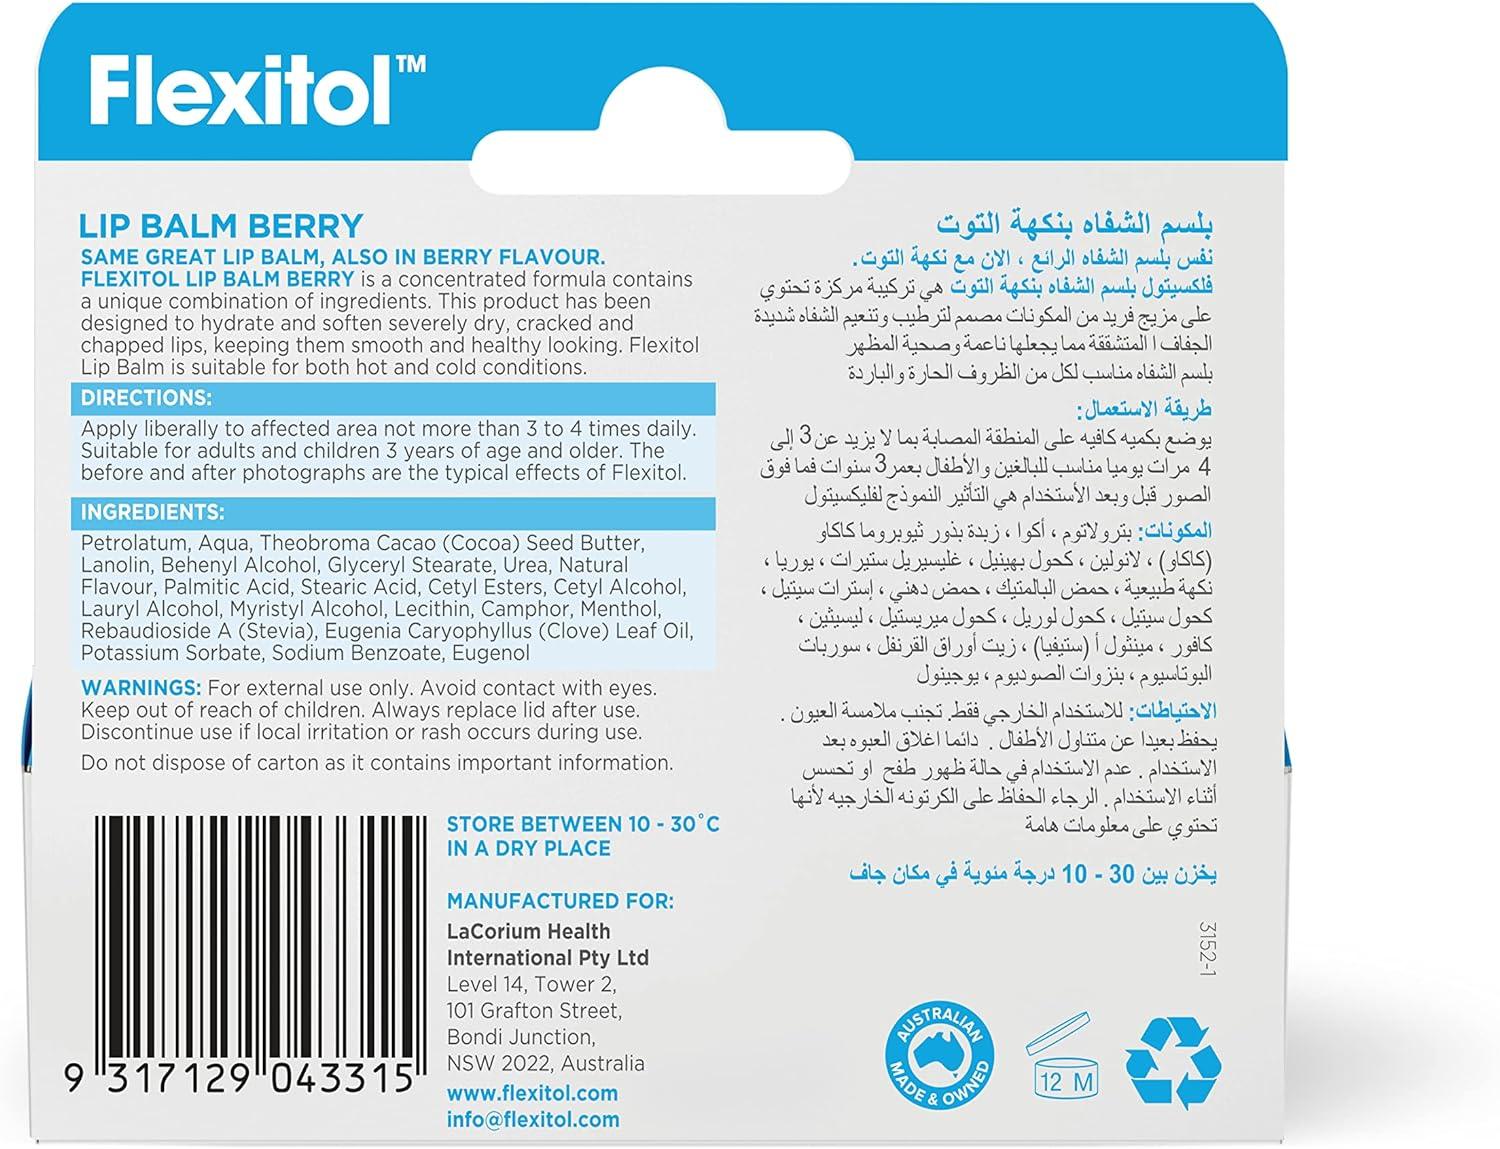 Flexitol Lip balm 10g- Berry - Wellness Shoppee